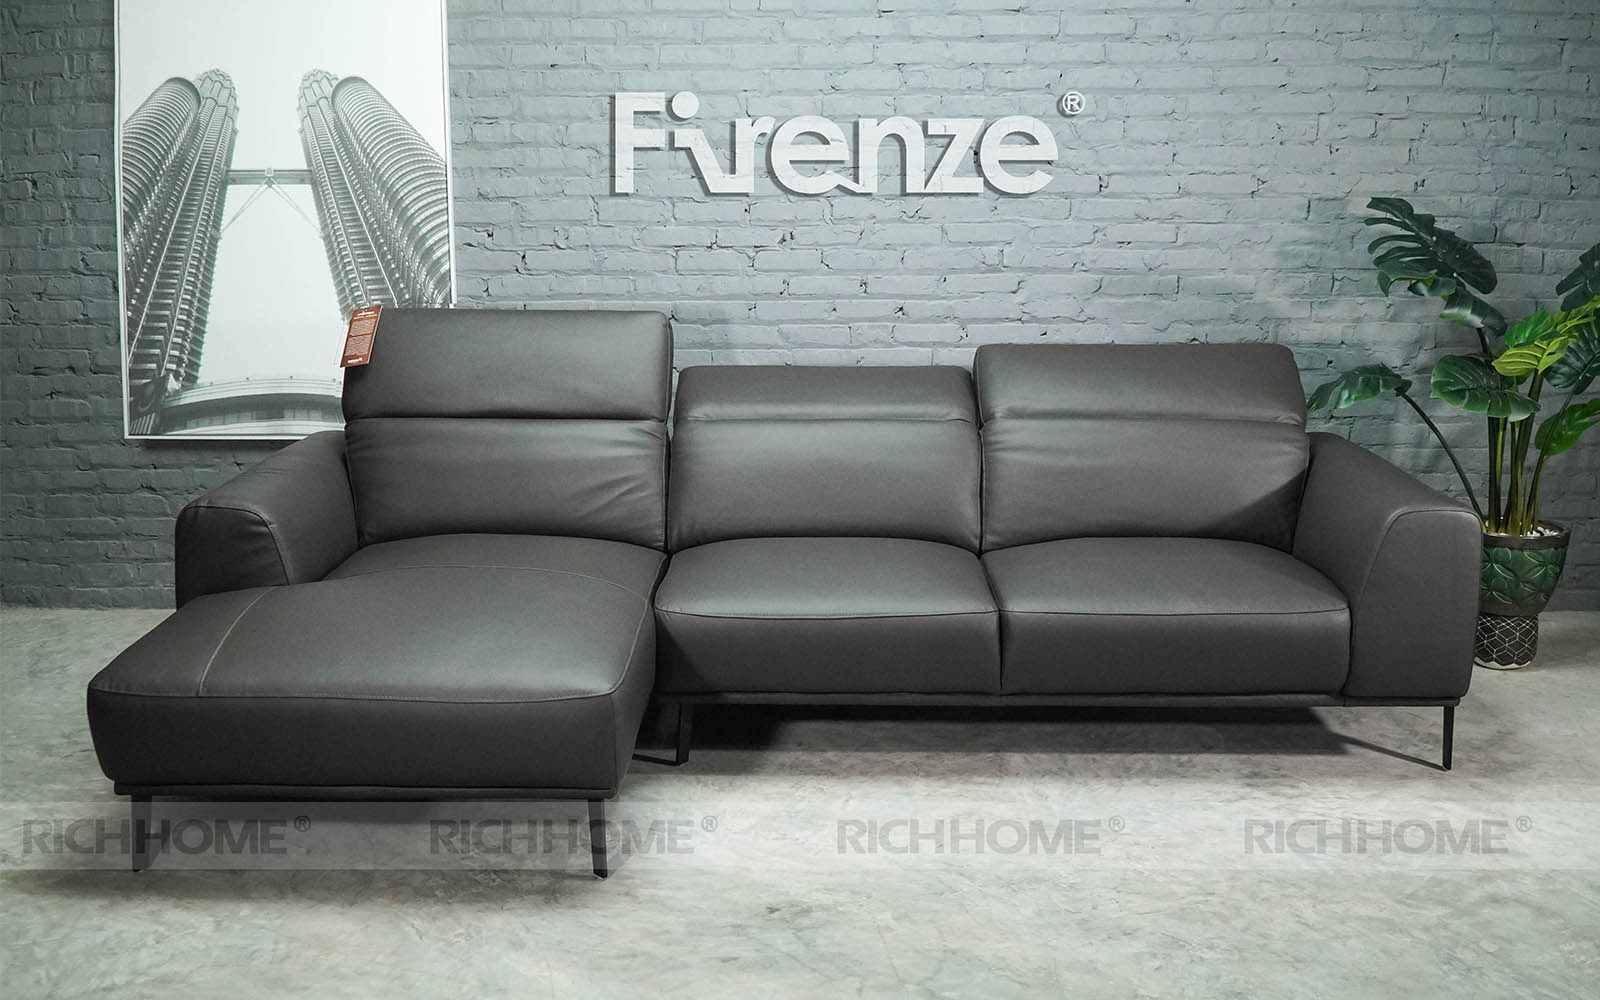 20 mẫu ghế sofa góc da màu đen đẹp cho phòng khách - Ảnh 2